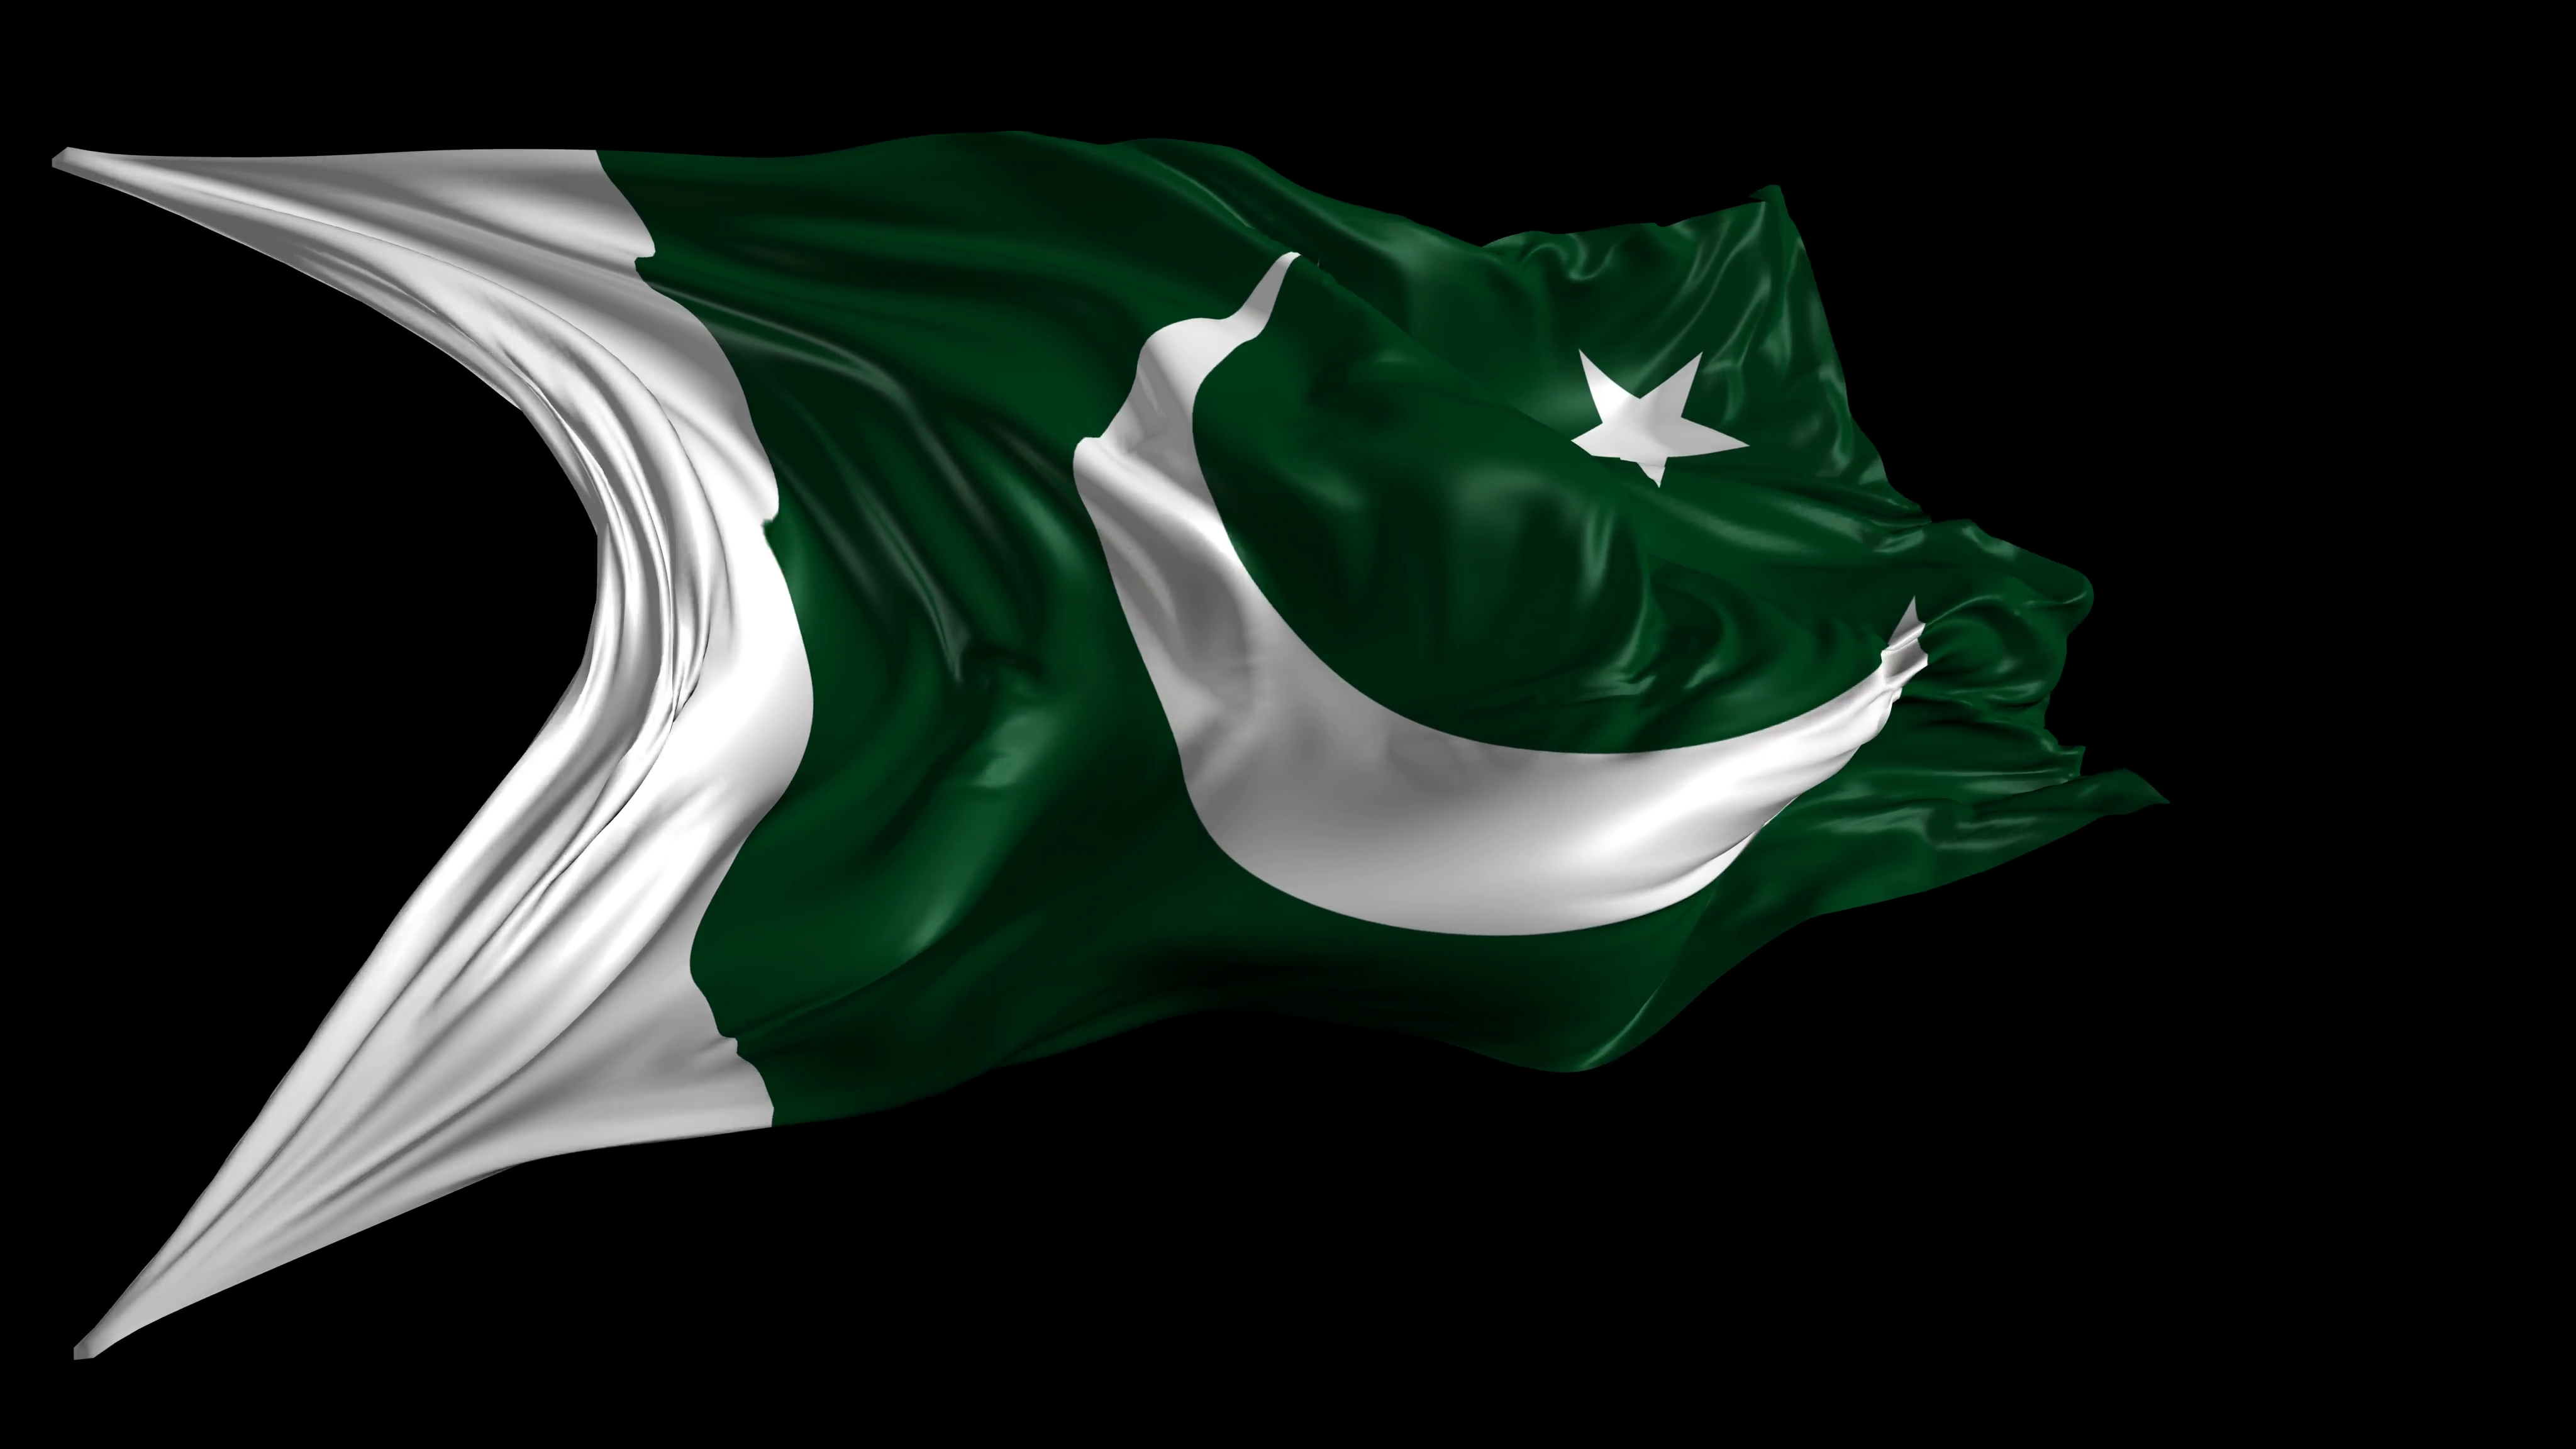 General 4096x2304 Pakistan flag logo minimalism